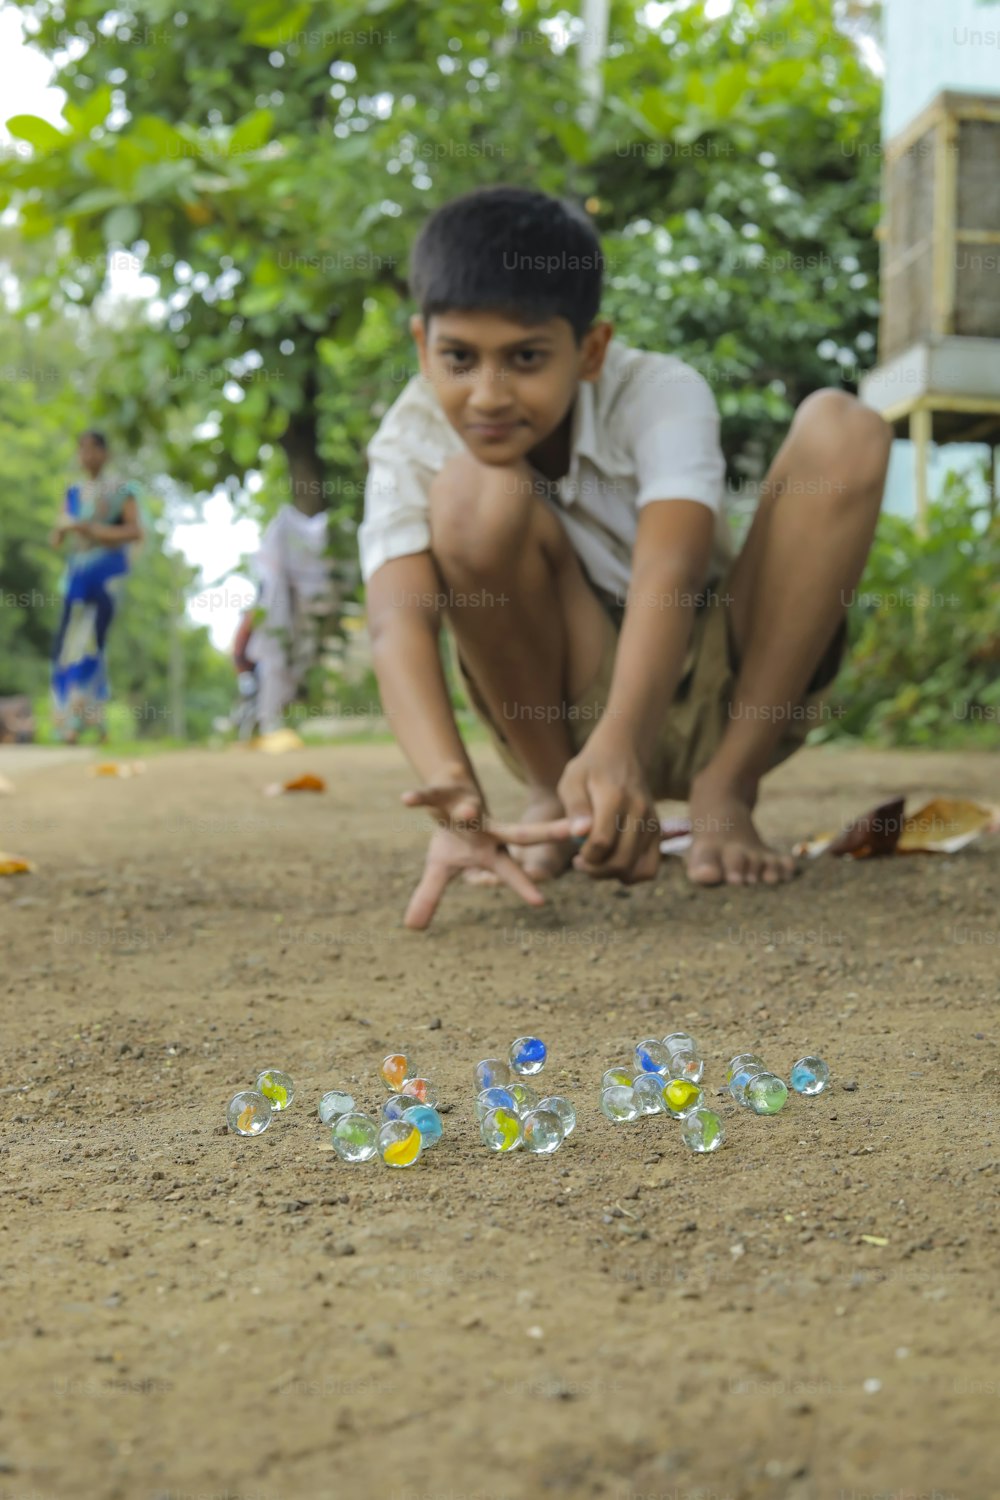 Criança indiana brincando com bolinhas de vidro que é um antigo jogo de aldeia indiana. Mármores de vidro também são chamados de Kancha na língua hindi.